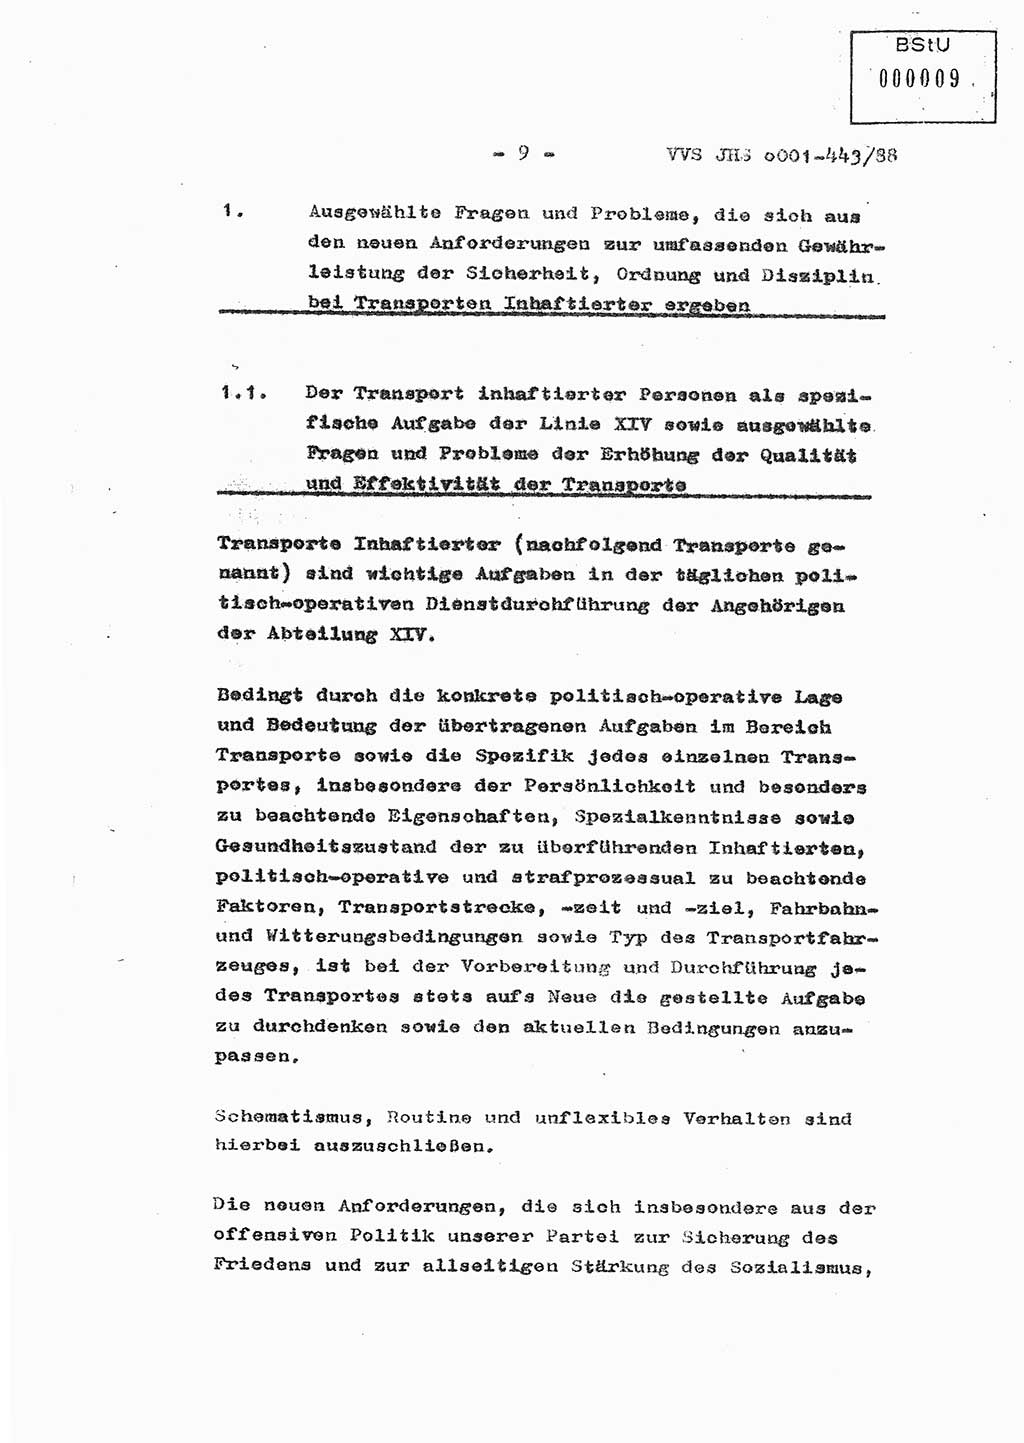 Diplomarbeit Hauptmann Michael Rast (Abt. ⅩⅣ), Major Bernd Rahaus (Abt. ⅩⅣ), Ministerium für Staatssicherheit (MfS) [Deutsche Demokratische Republik (DDR)], Juristische Hochschule (JHS), Vertrauliche Verschlußsache (VVS) o001-443/88, Potsdam 1988, Seite 9 (Dipl.-Arb. MfS DDR JHS VVS o001-443/88 1988, S. 9)